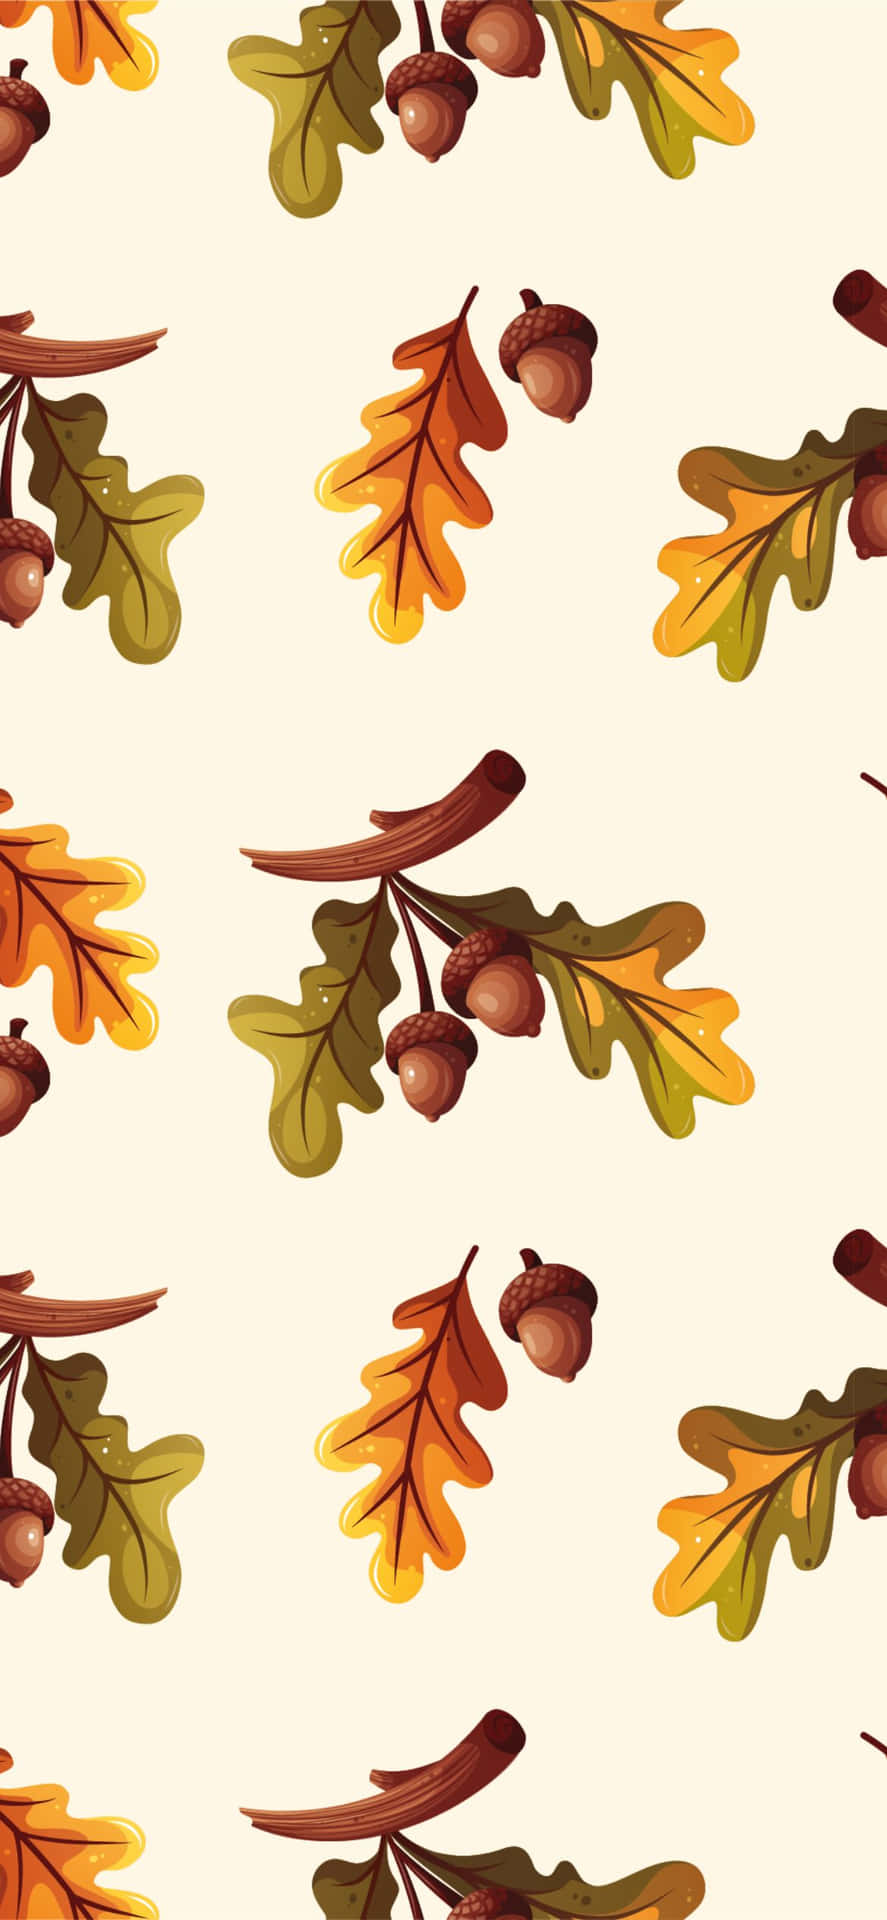 Erlebeschönheit In Ihrer Höchsten Form - Erfreue Dich An Den Farben Der Saison Mit Dem Besten Herbst!